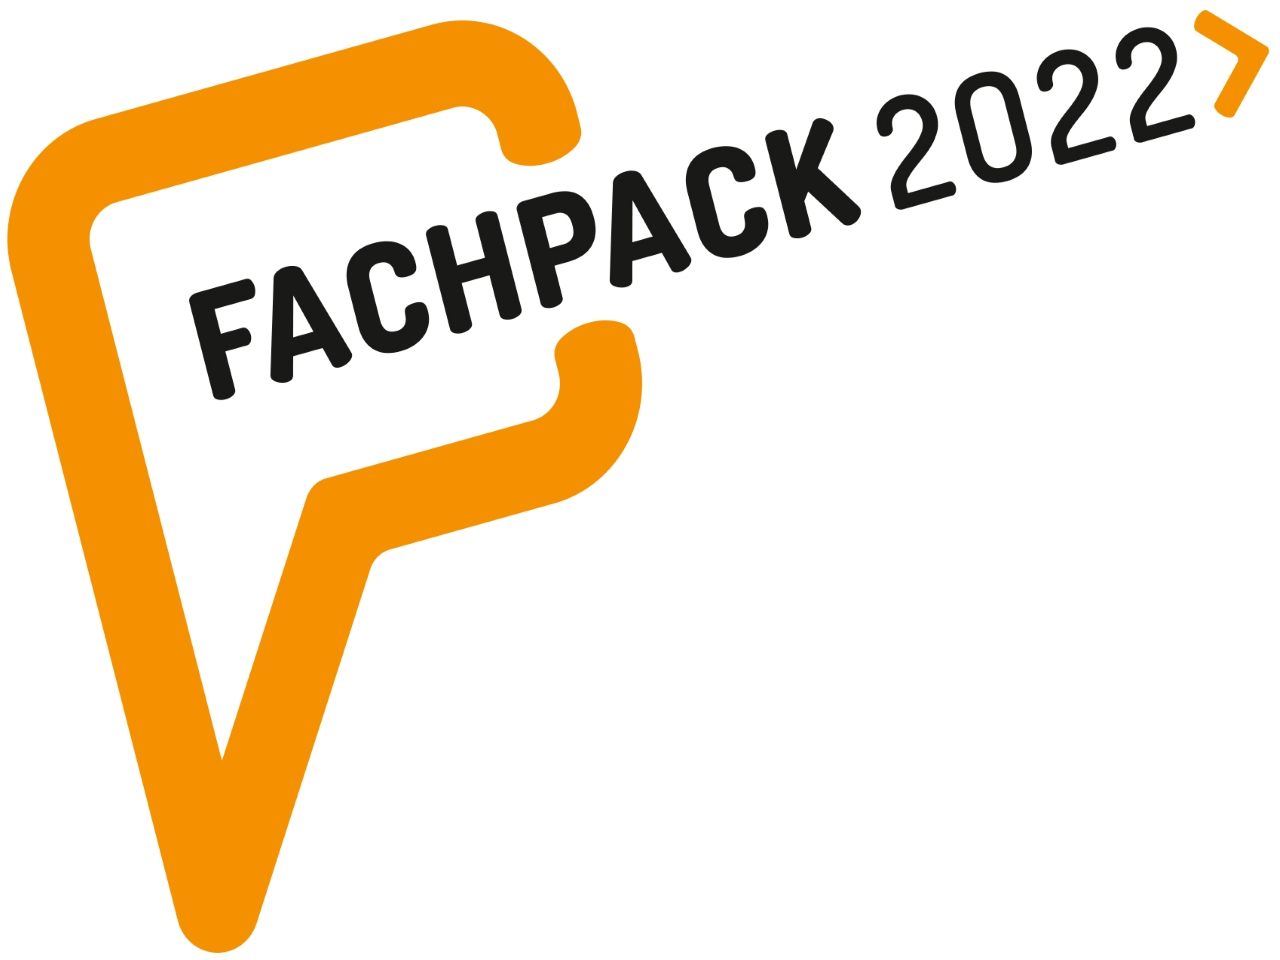 Fachpack 2022, Nuremberg, Germany